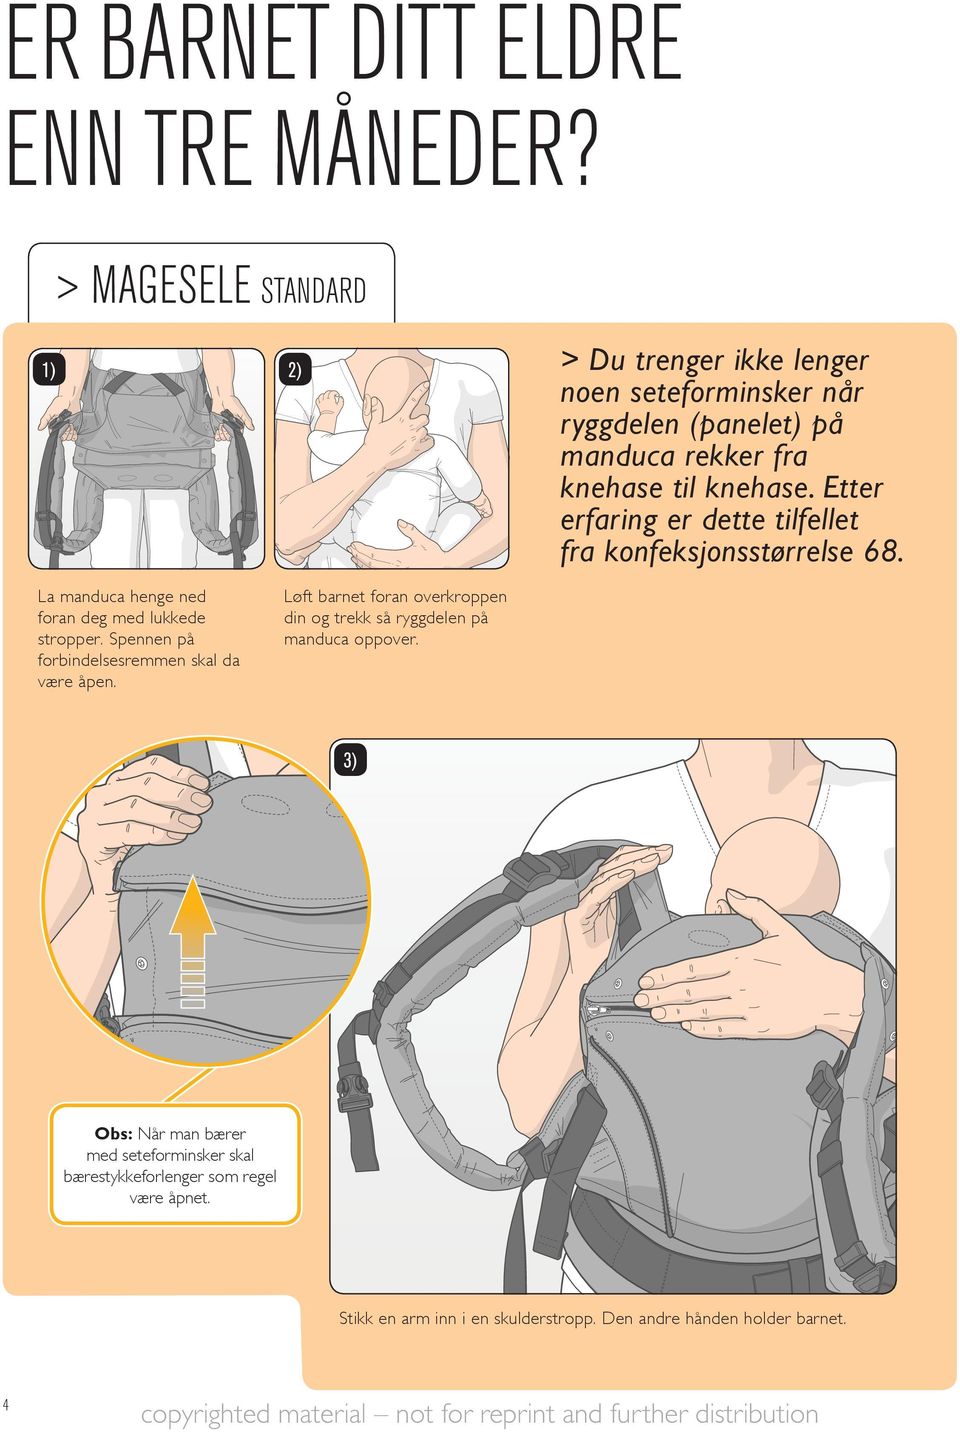 > Du trenger ikke lenger noen seteforminsker når ryggdelen (panelet) på manduca rekker fra knehase til knehase.